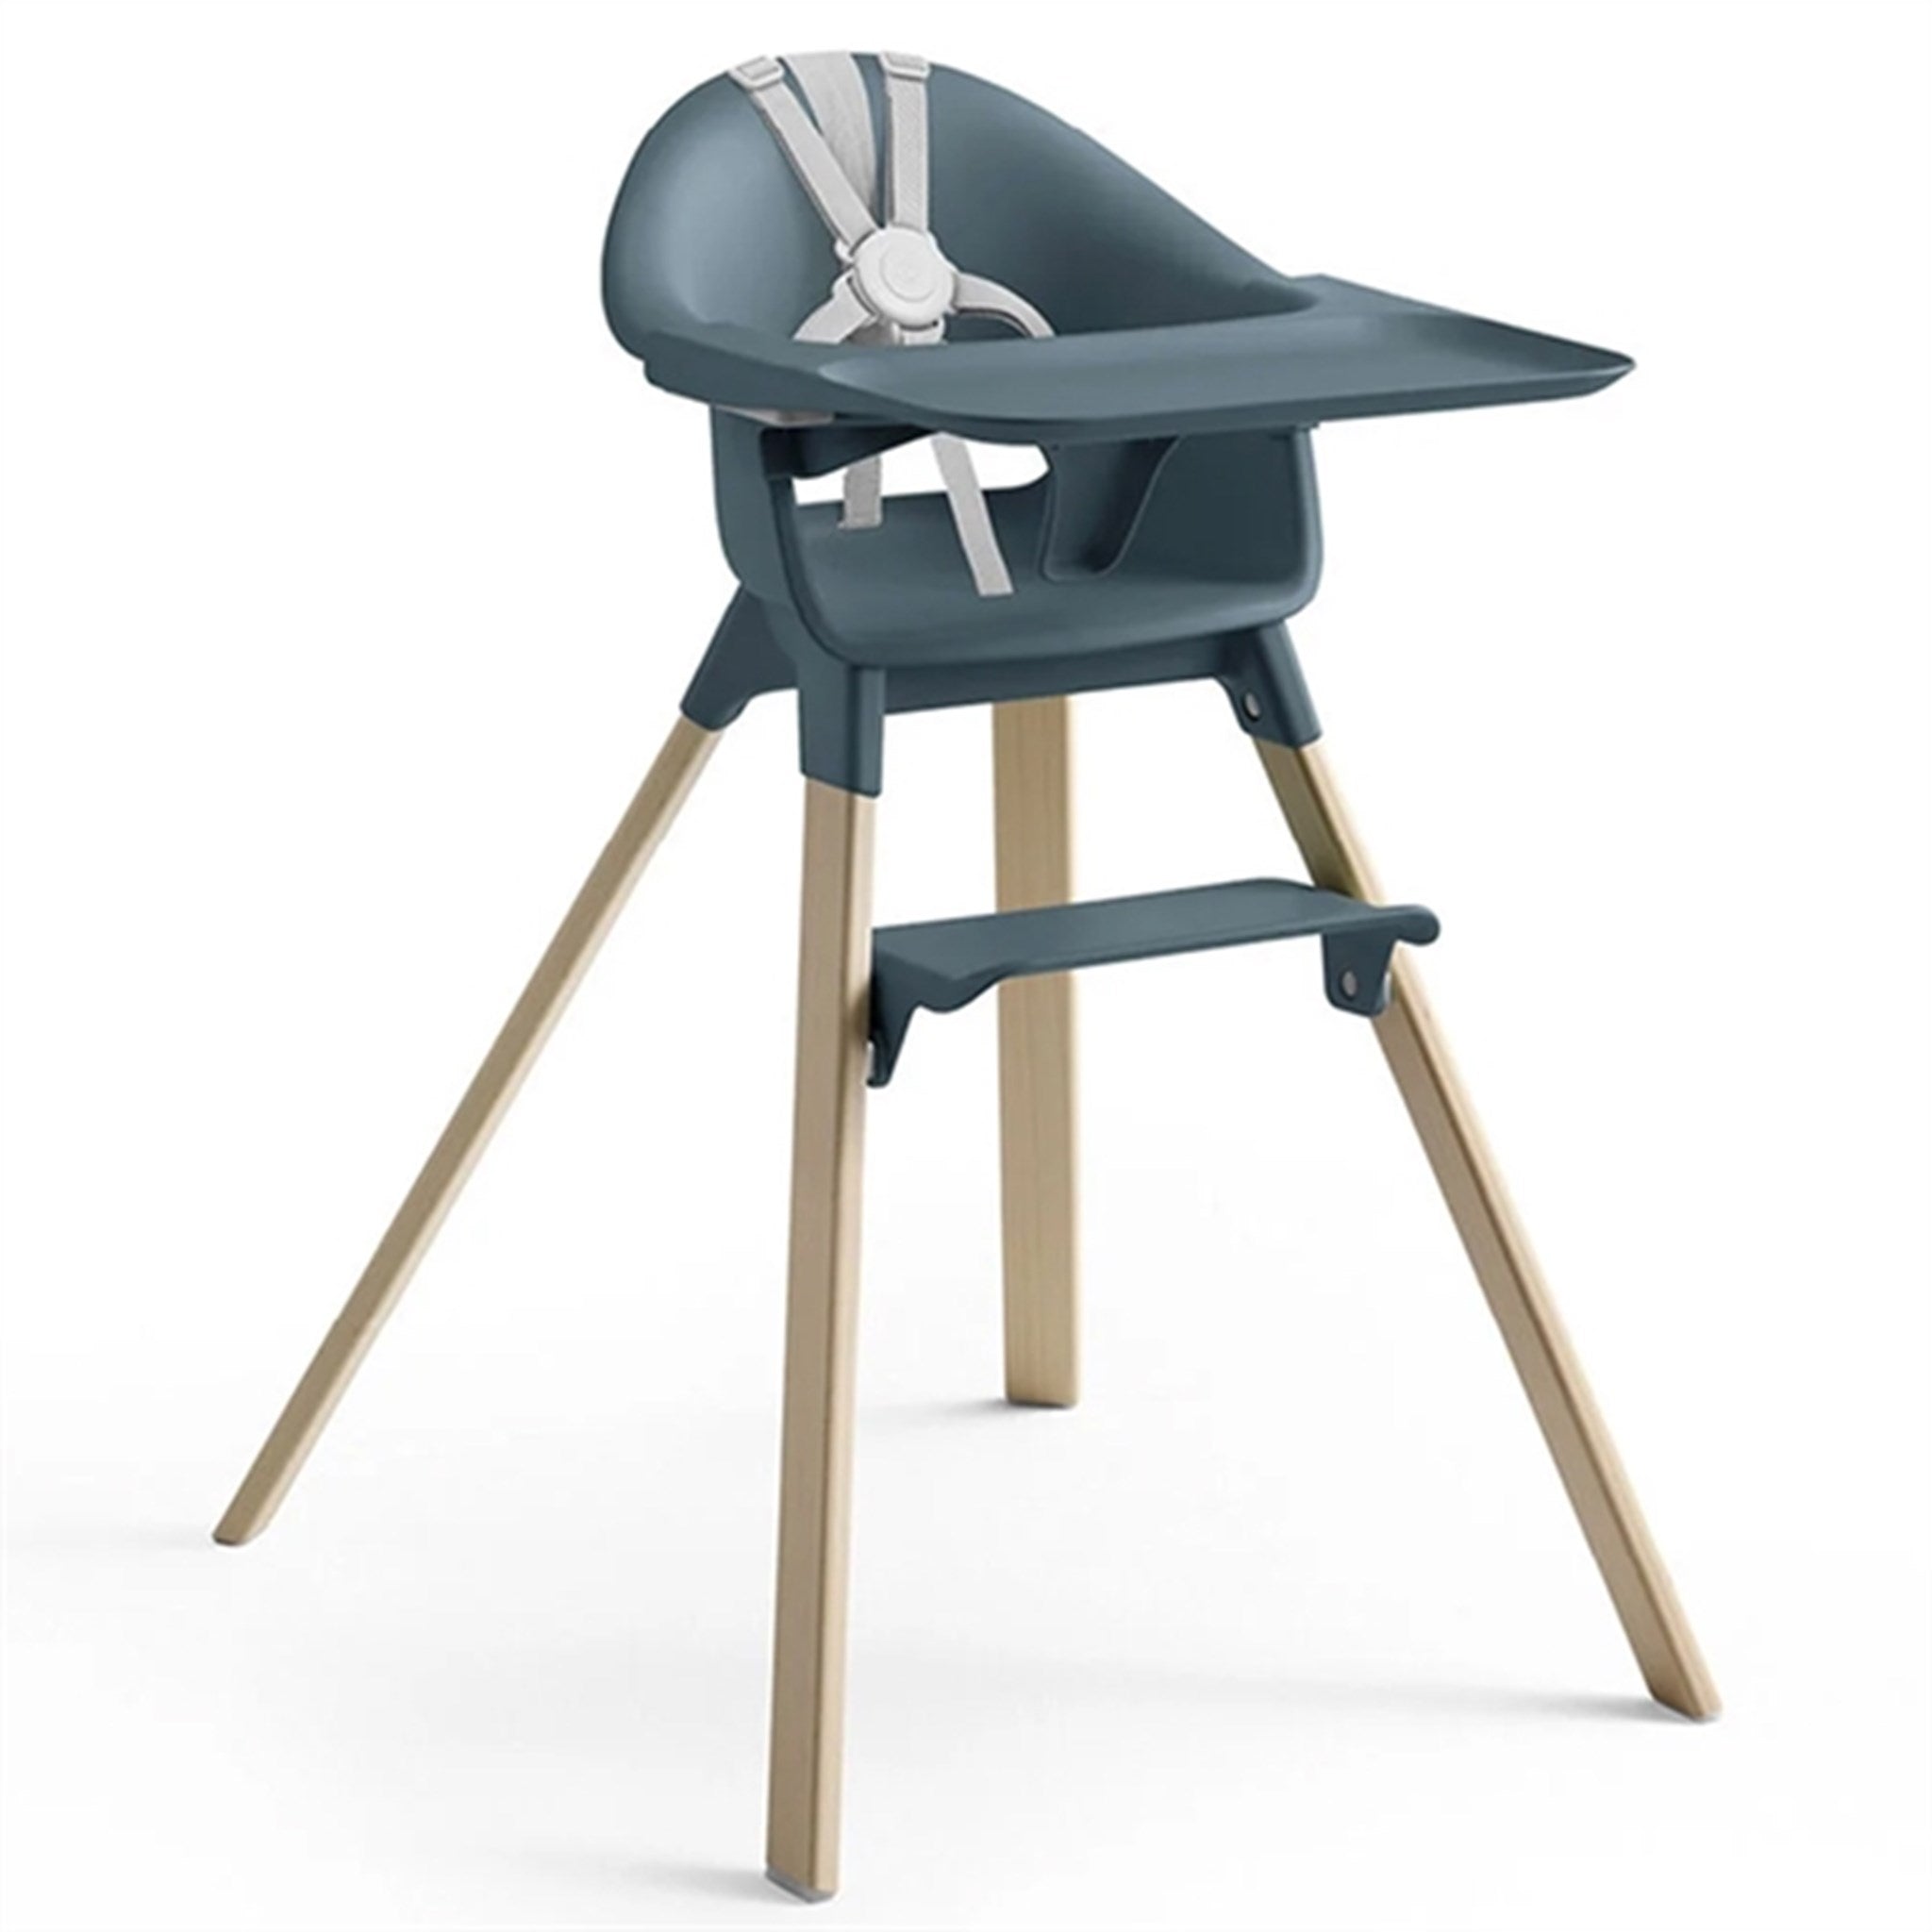 Stokke® Clikk™ High Chair Fjord Blue